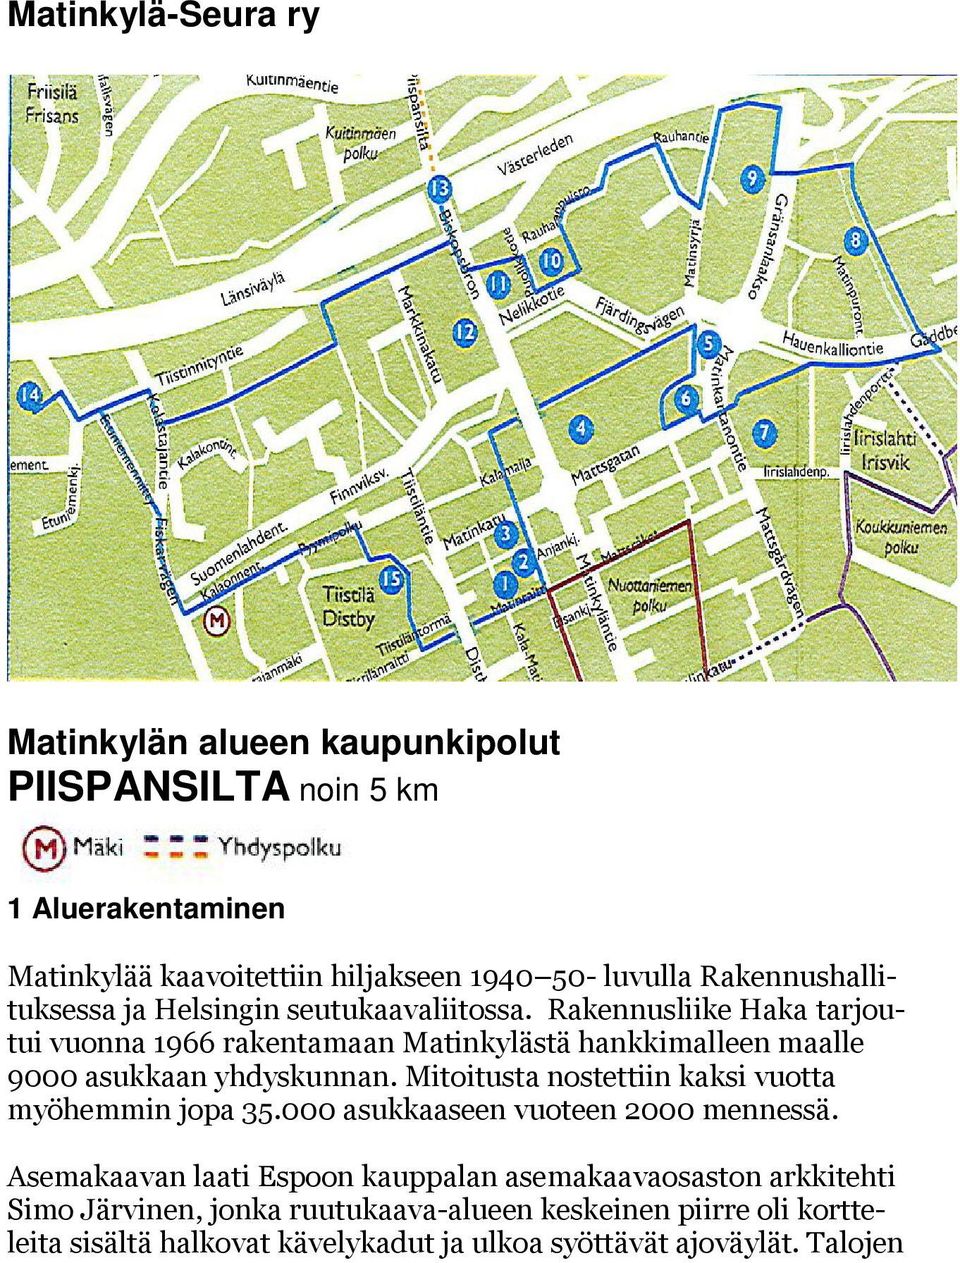 Rakennusliike Haka tarjoutui vuonna 1966 rakentamaan Matinkylästä hankkimalleen maalle 9000 asukkaan yhdyskunnan.